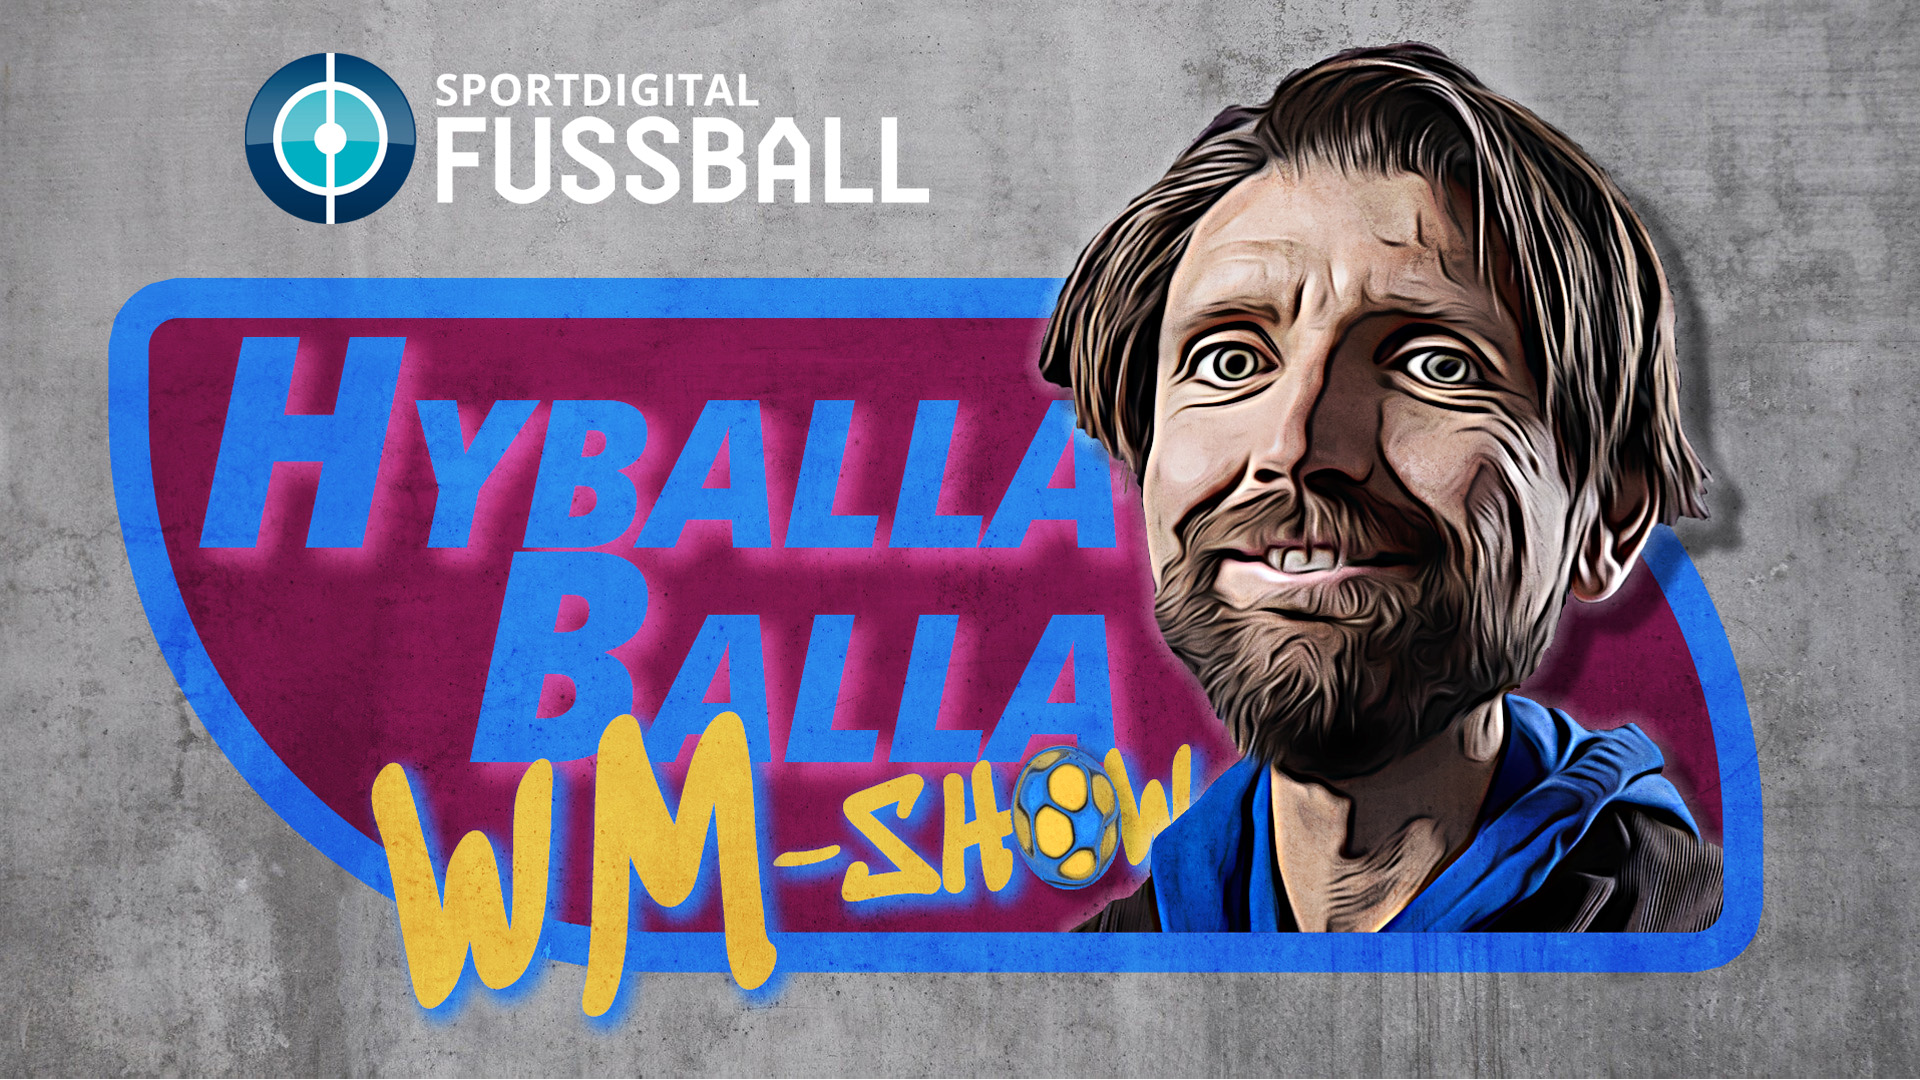 Trainerexperte Peter Hyballa mit täglicher WM-Show live bei Sportdigital FUSSBALL -  Klinsmann, van der Vaart und viele mehr zu Gast!